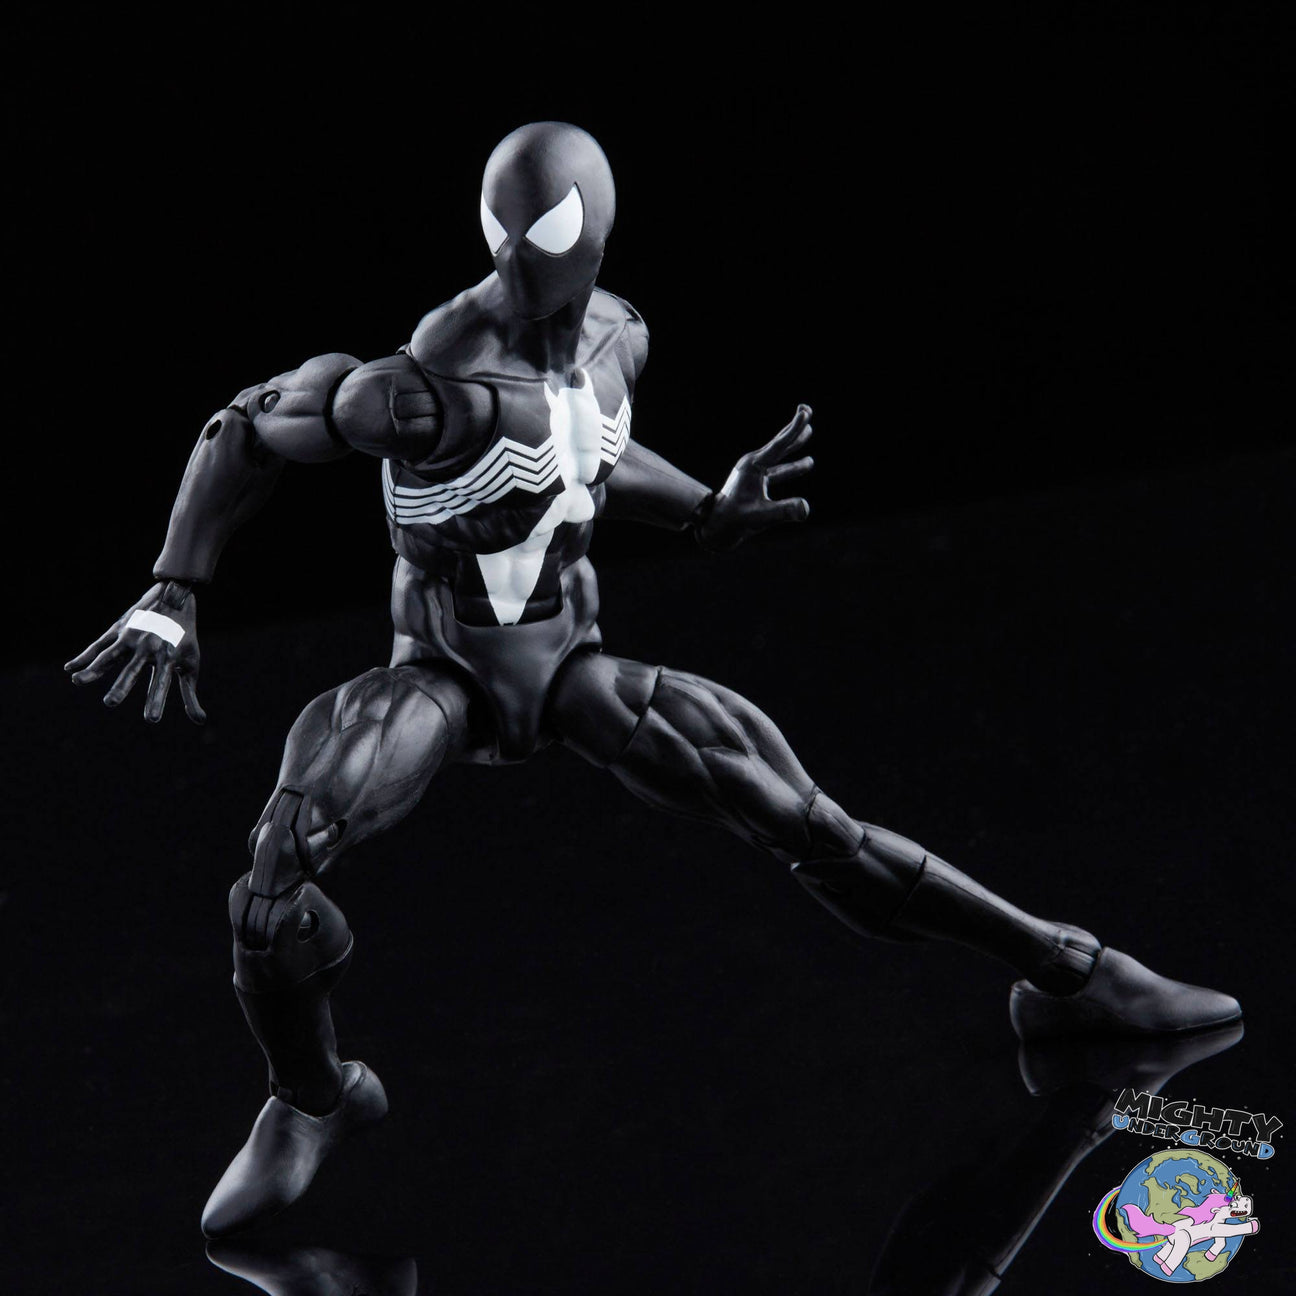 Marvel Legends: Symbiote Spider-Man-Actionfiguren-Hasbro-Mighty Underground